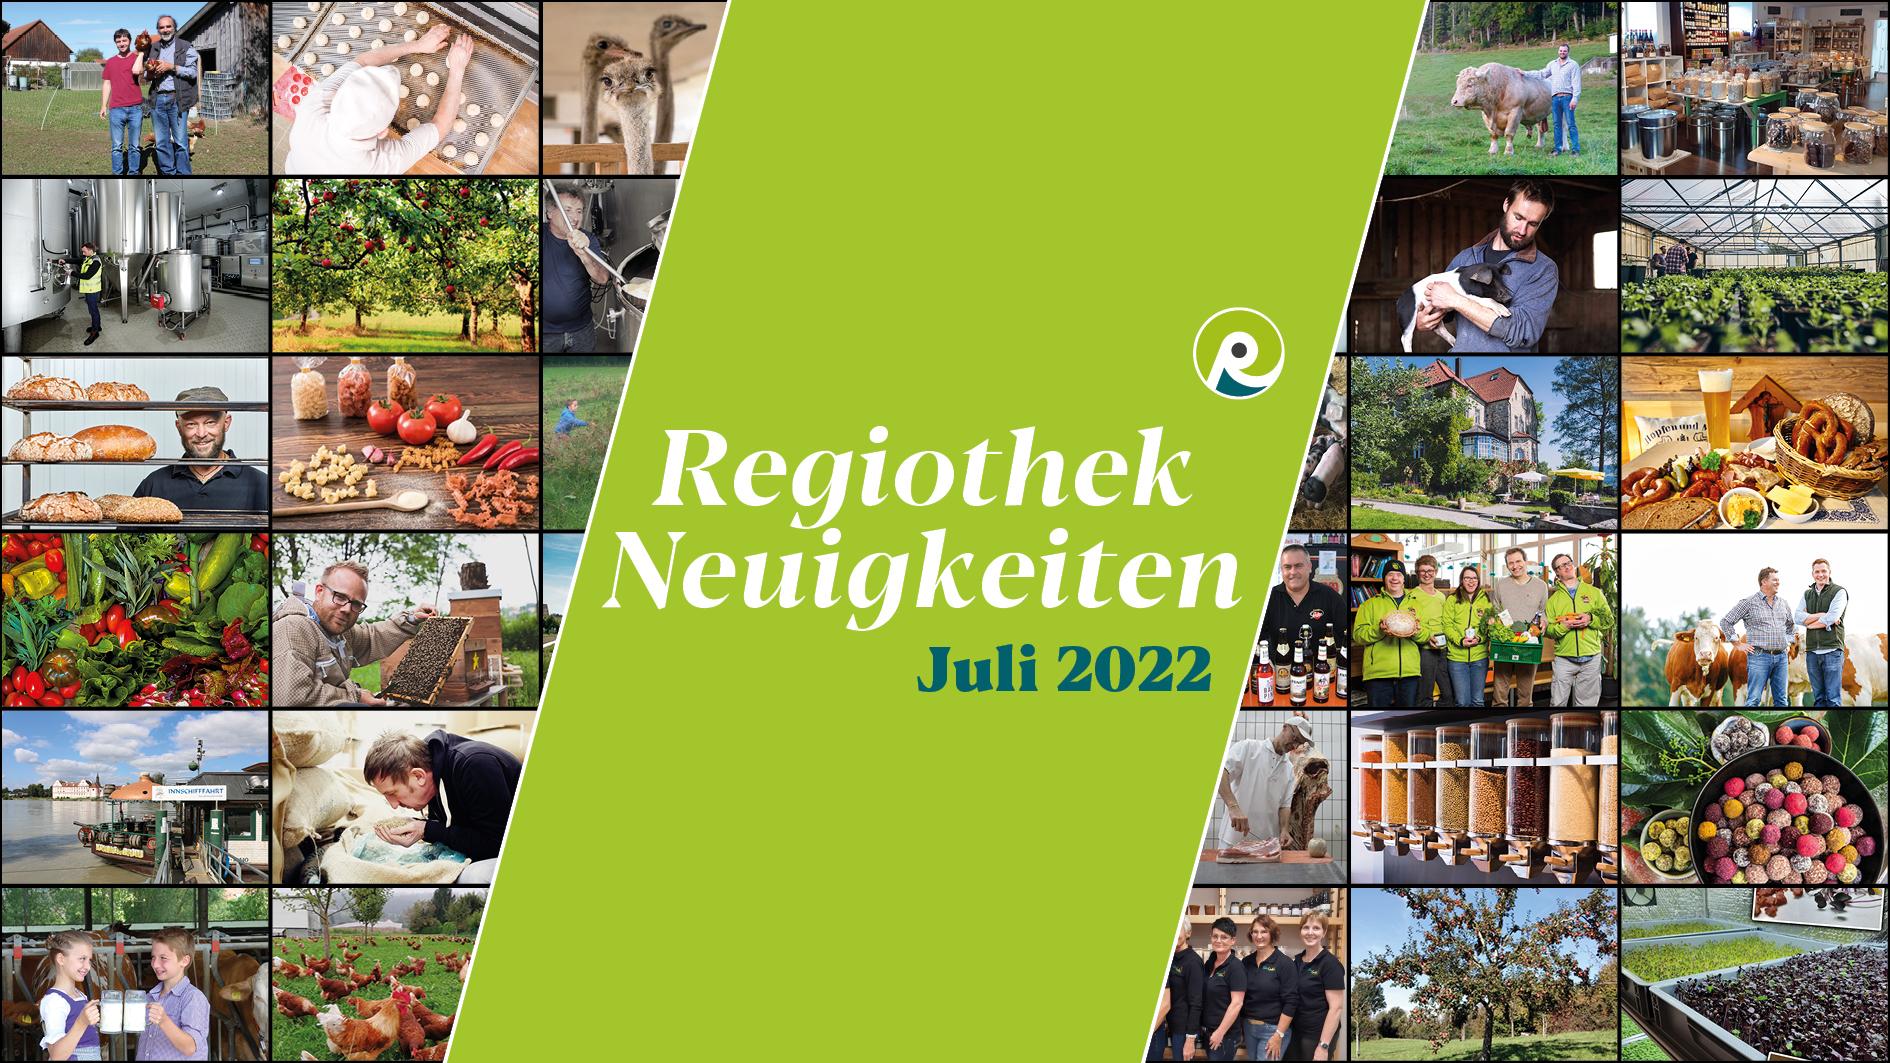 Text "Regiothek Neuigkeiten Juli 2022" auf stilisiertem Hintergrund